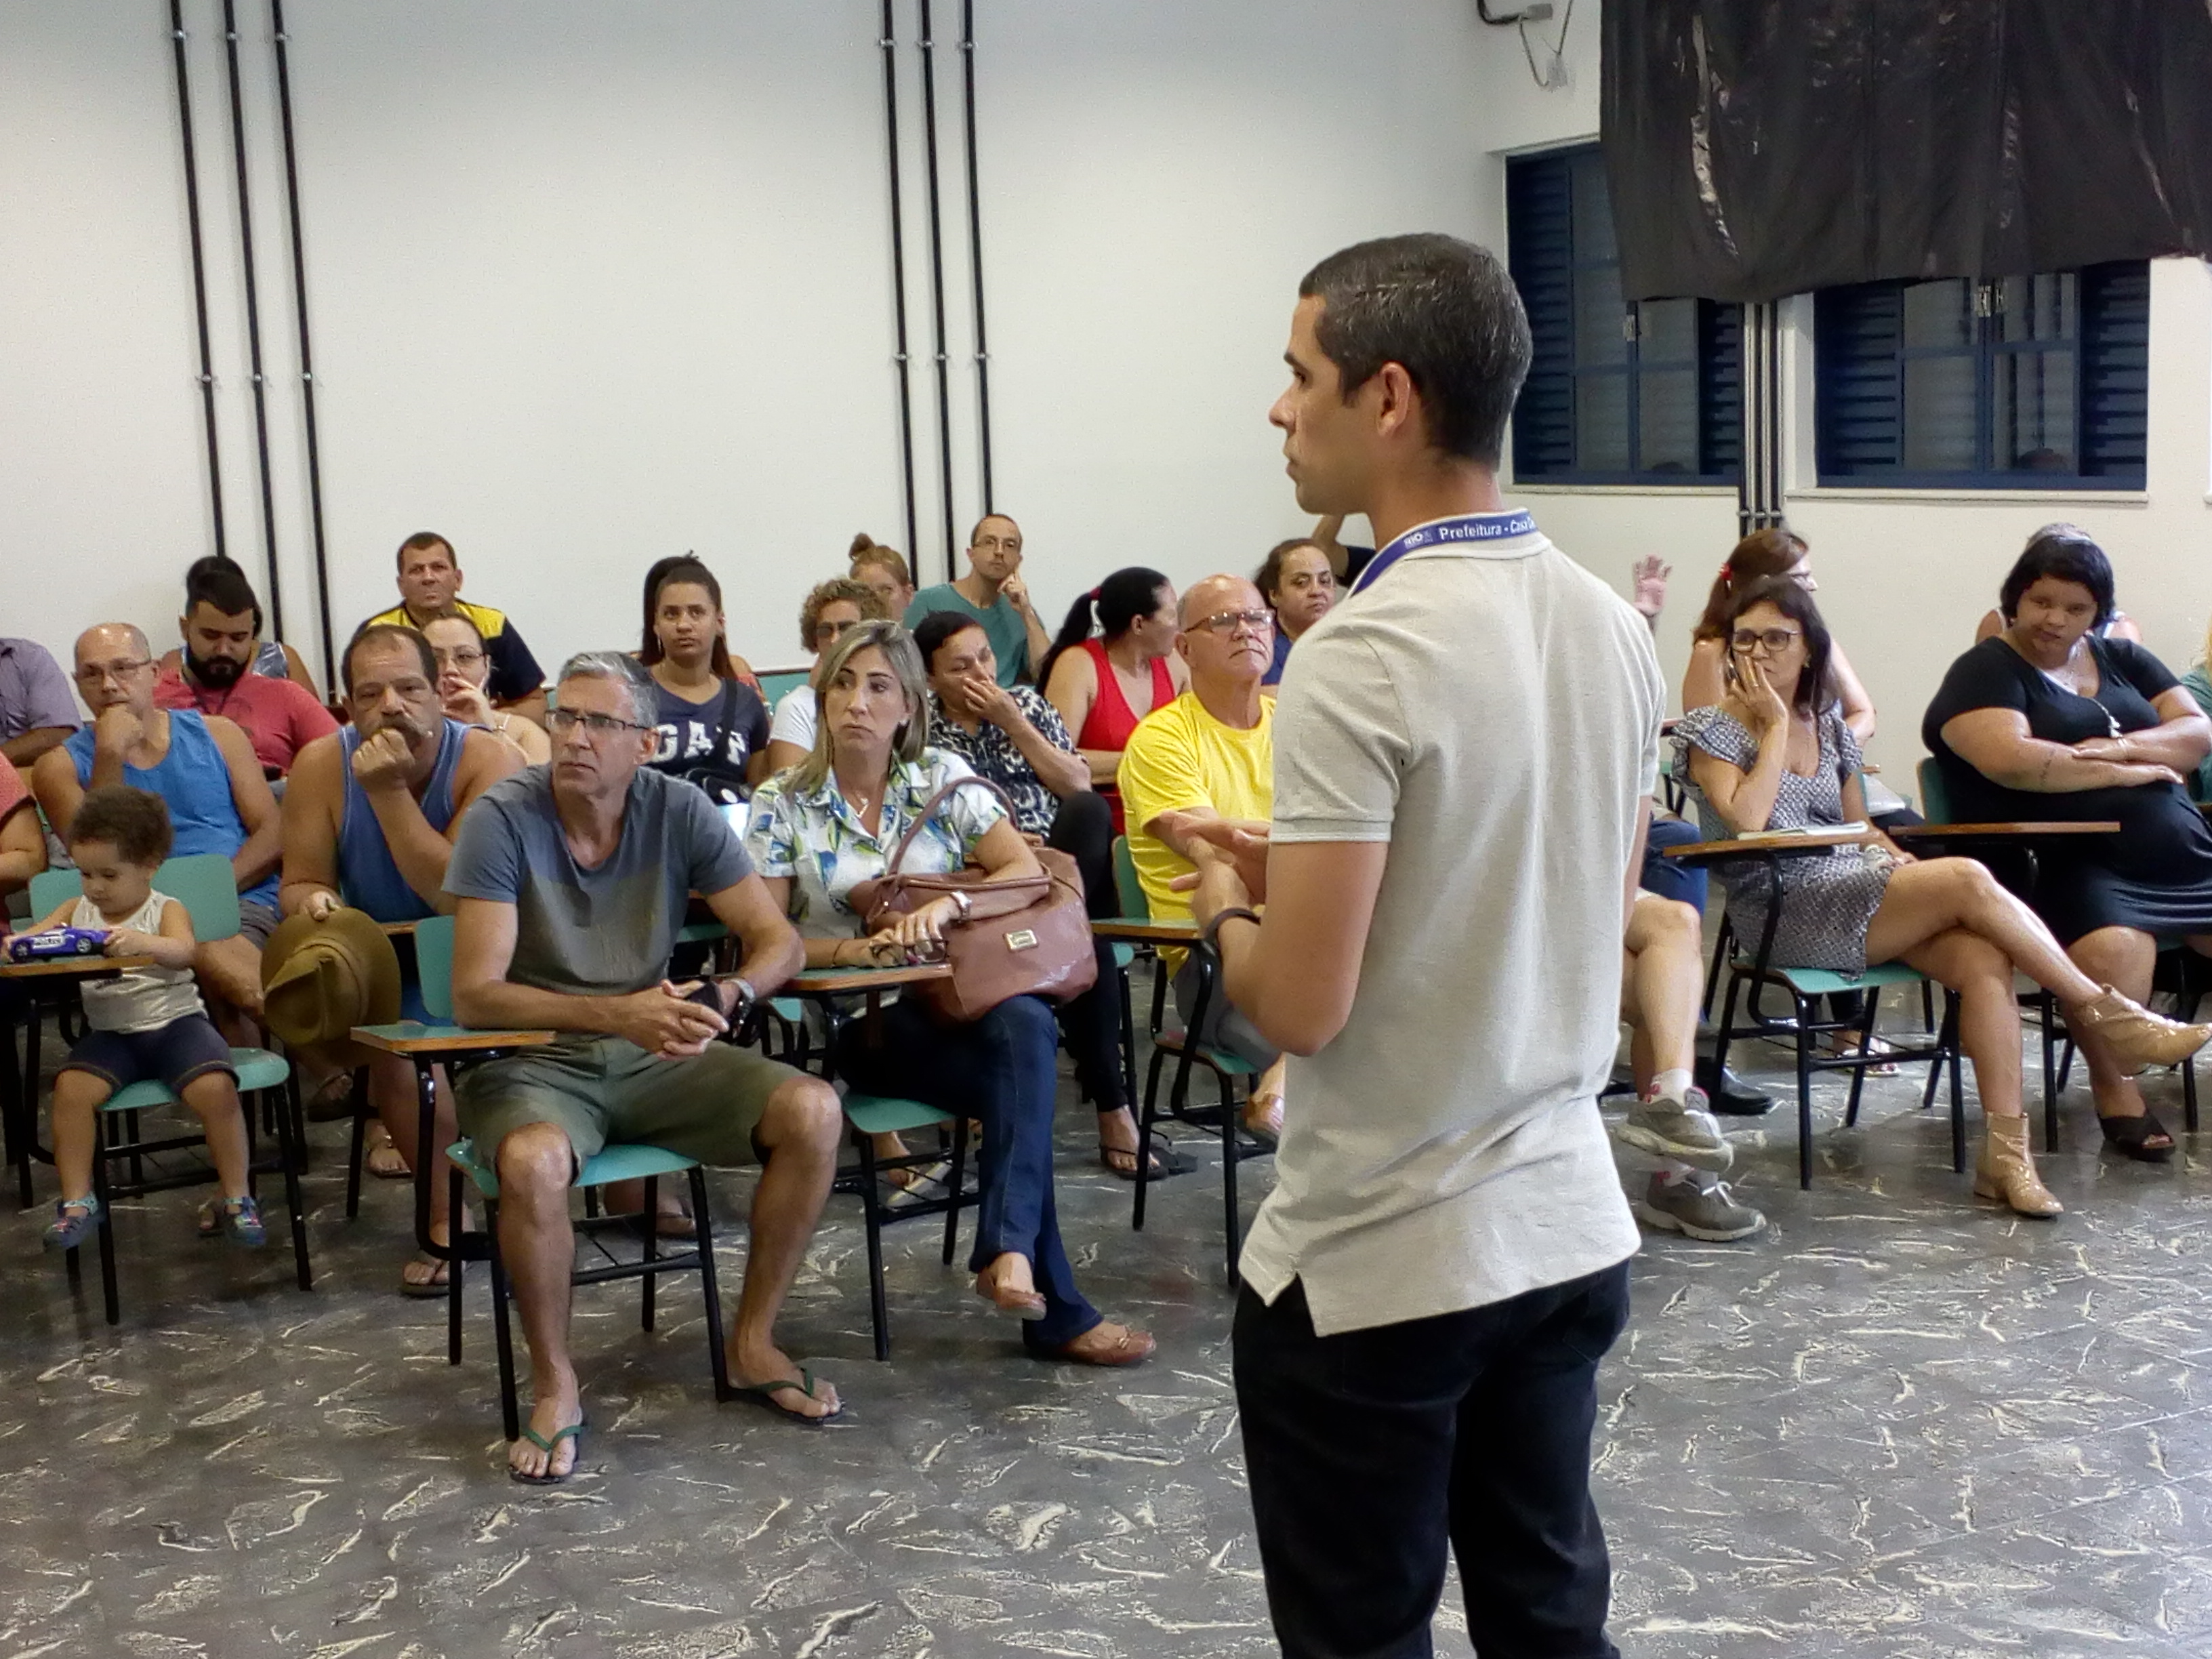 Superintendente Leandro Marques conversando com os moradores